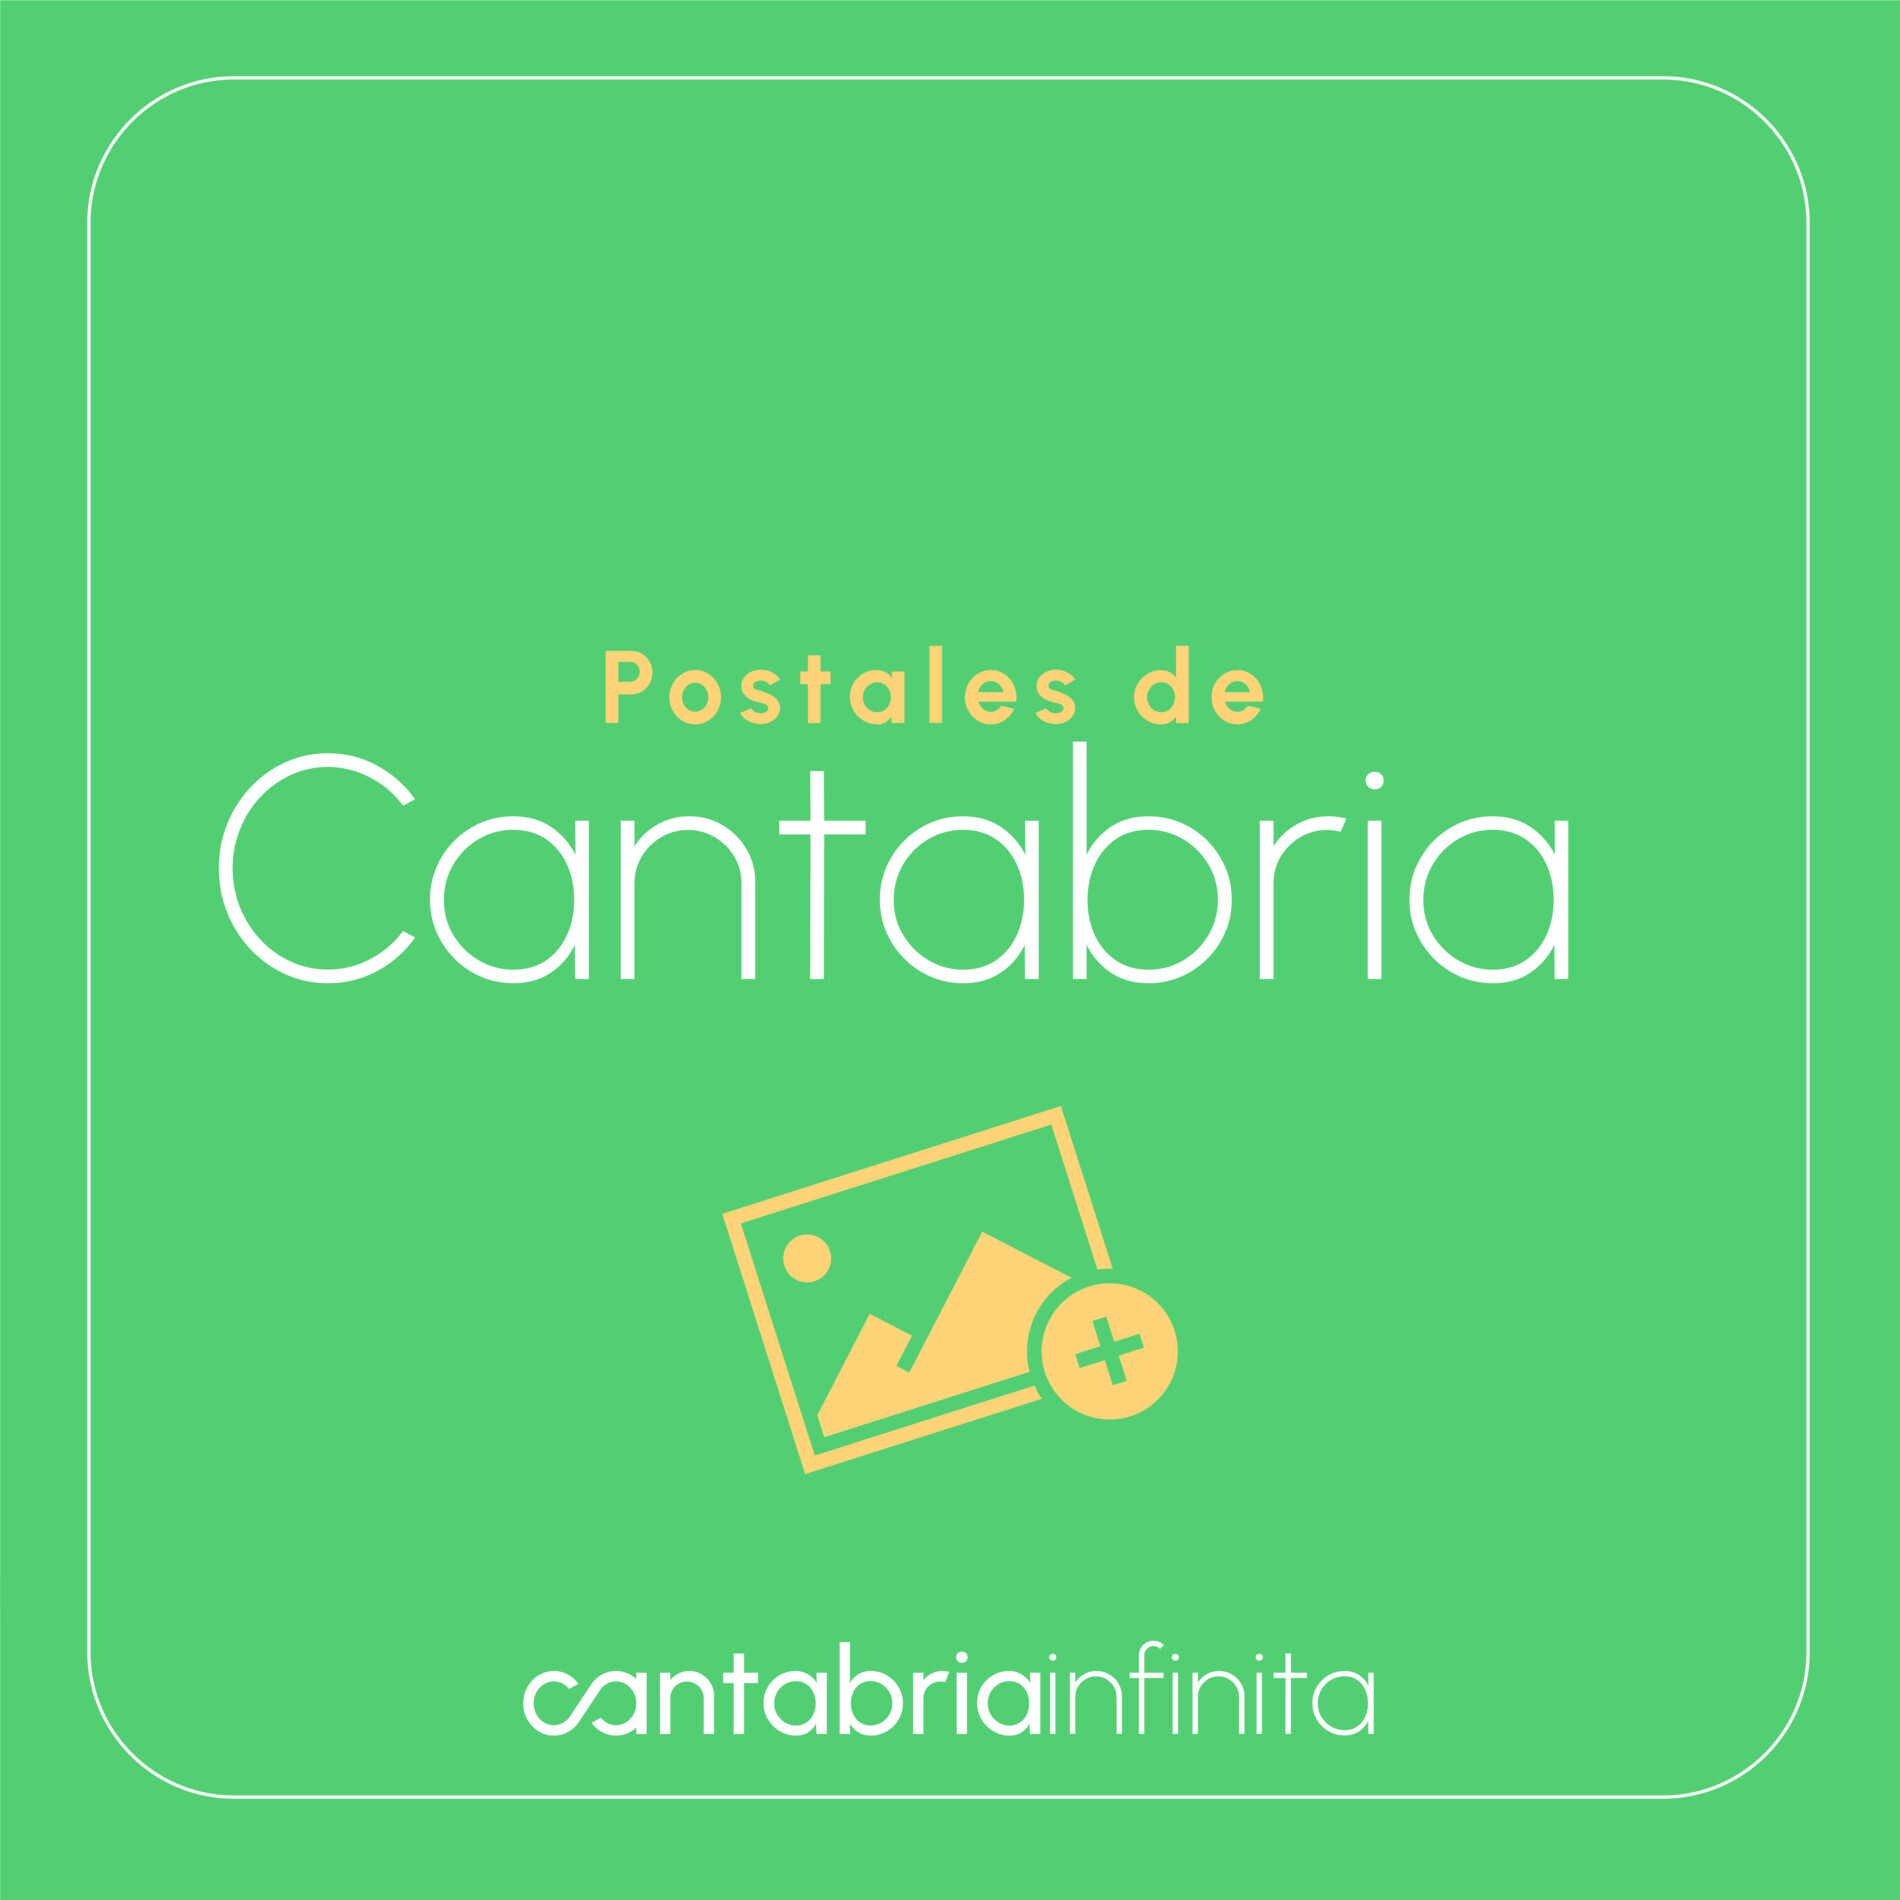 Cantabria Infinita - Turismo de Cantabria